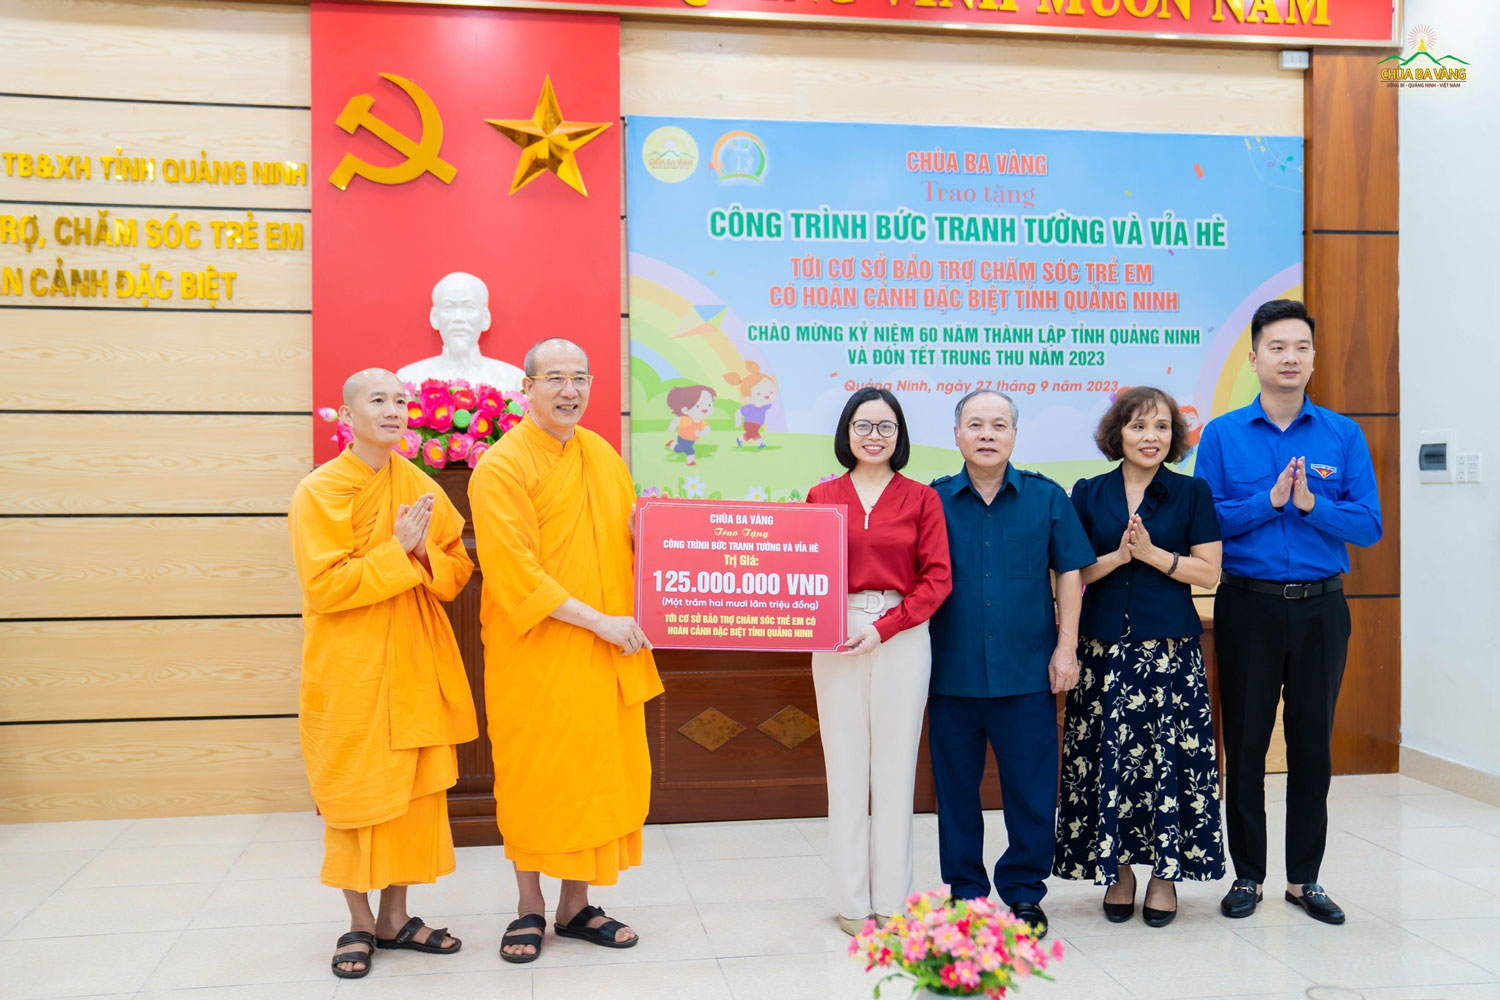 Ngày 27/9, Sư Phụ Thích Trúc Thái Minh đại diện Chùa Ba Vàng đã trao tặng cho Cơ sở bảo trợ chăm sóc trẻ em có hoàn cảnh đặc biệt tỉnh Quảng Ninh bức vẽ tranh tường có diện tích hơn 200 m2, được thực hiện ngay trong khuôn viên cơ sở